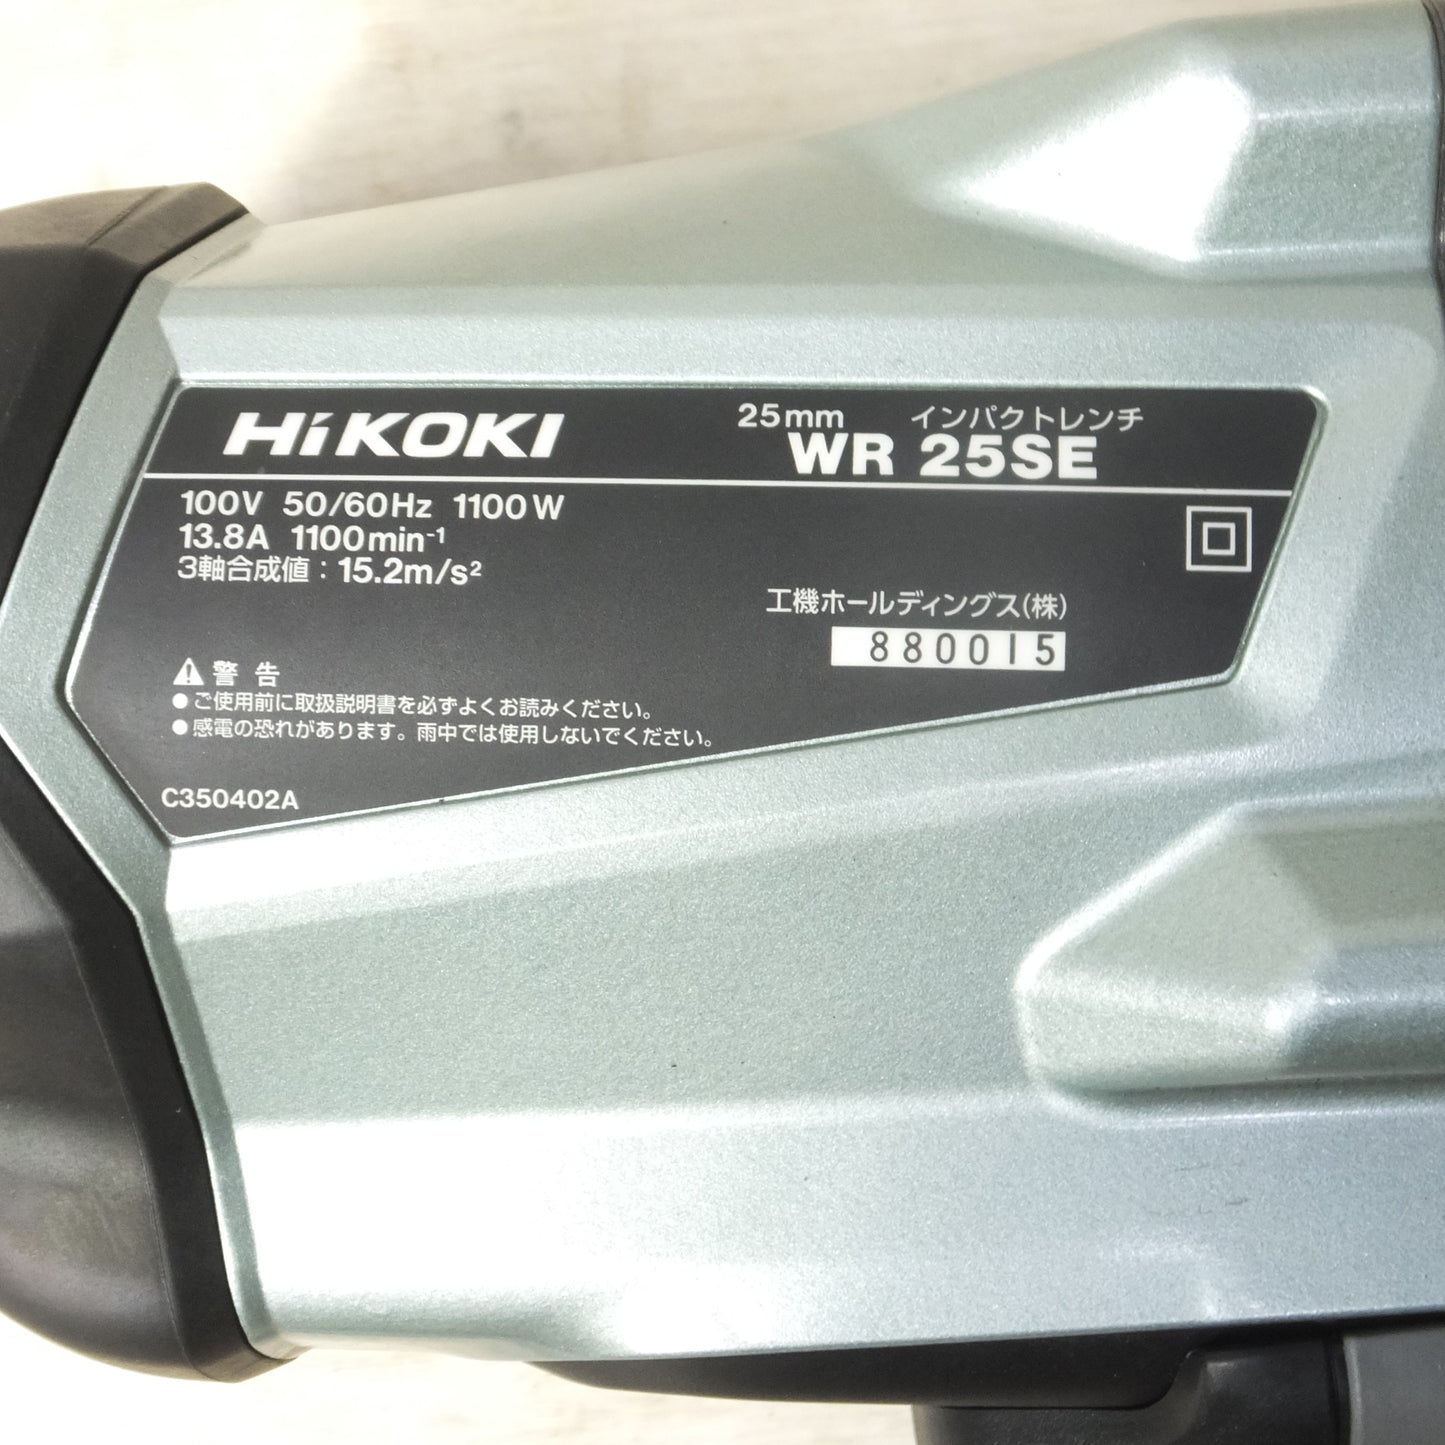 [送料無料] 美品◆HiKOKI ハイコーキ 25mm インパクトレンチ WR25SE コード式 電動工具 100V◆